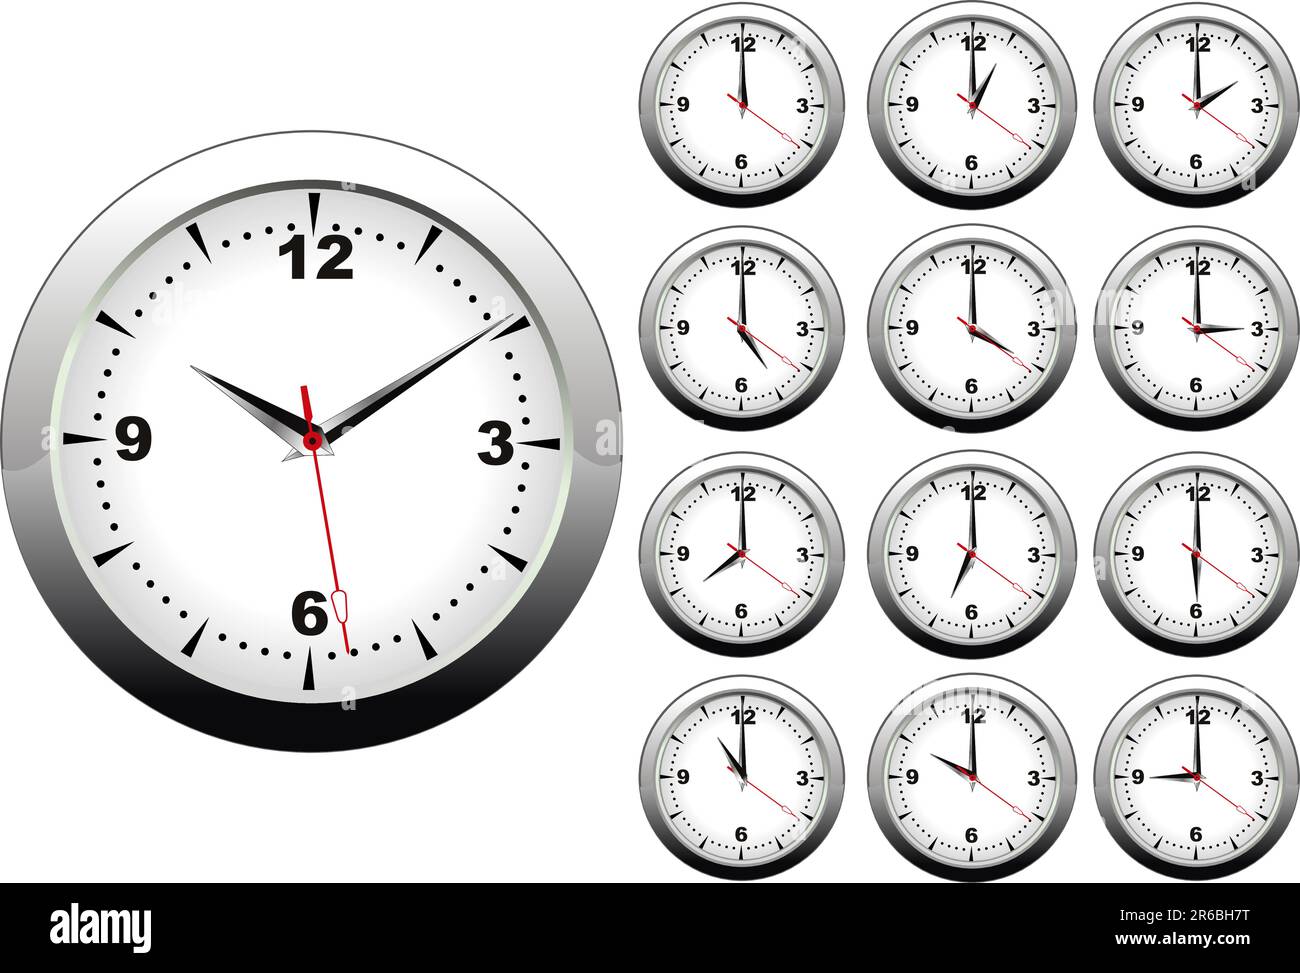 Часы показывающие разное время. Часы циферблат. Изображение часов. Циферблаты с разным временем. Часы со стрелками.